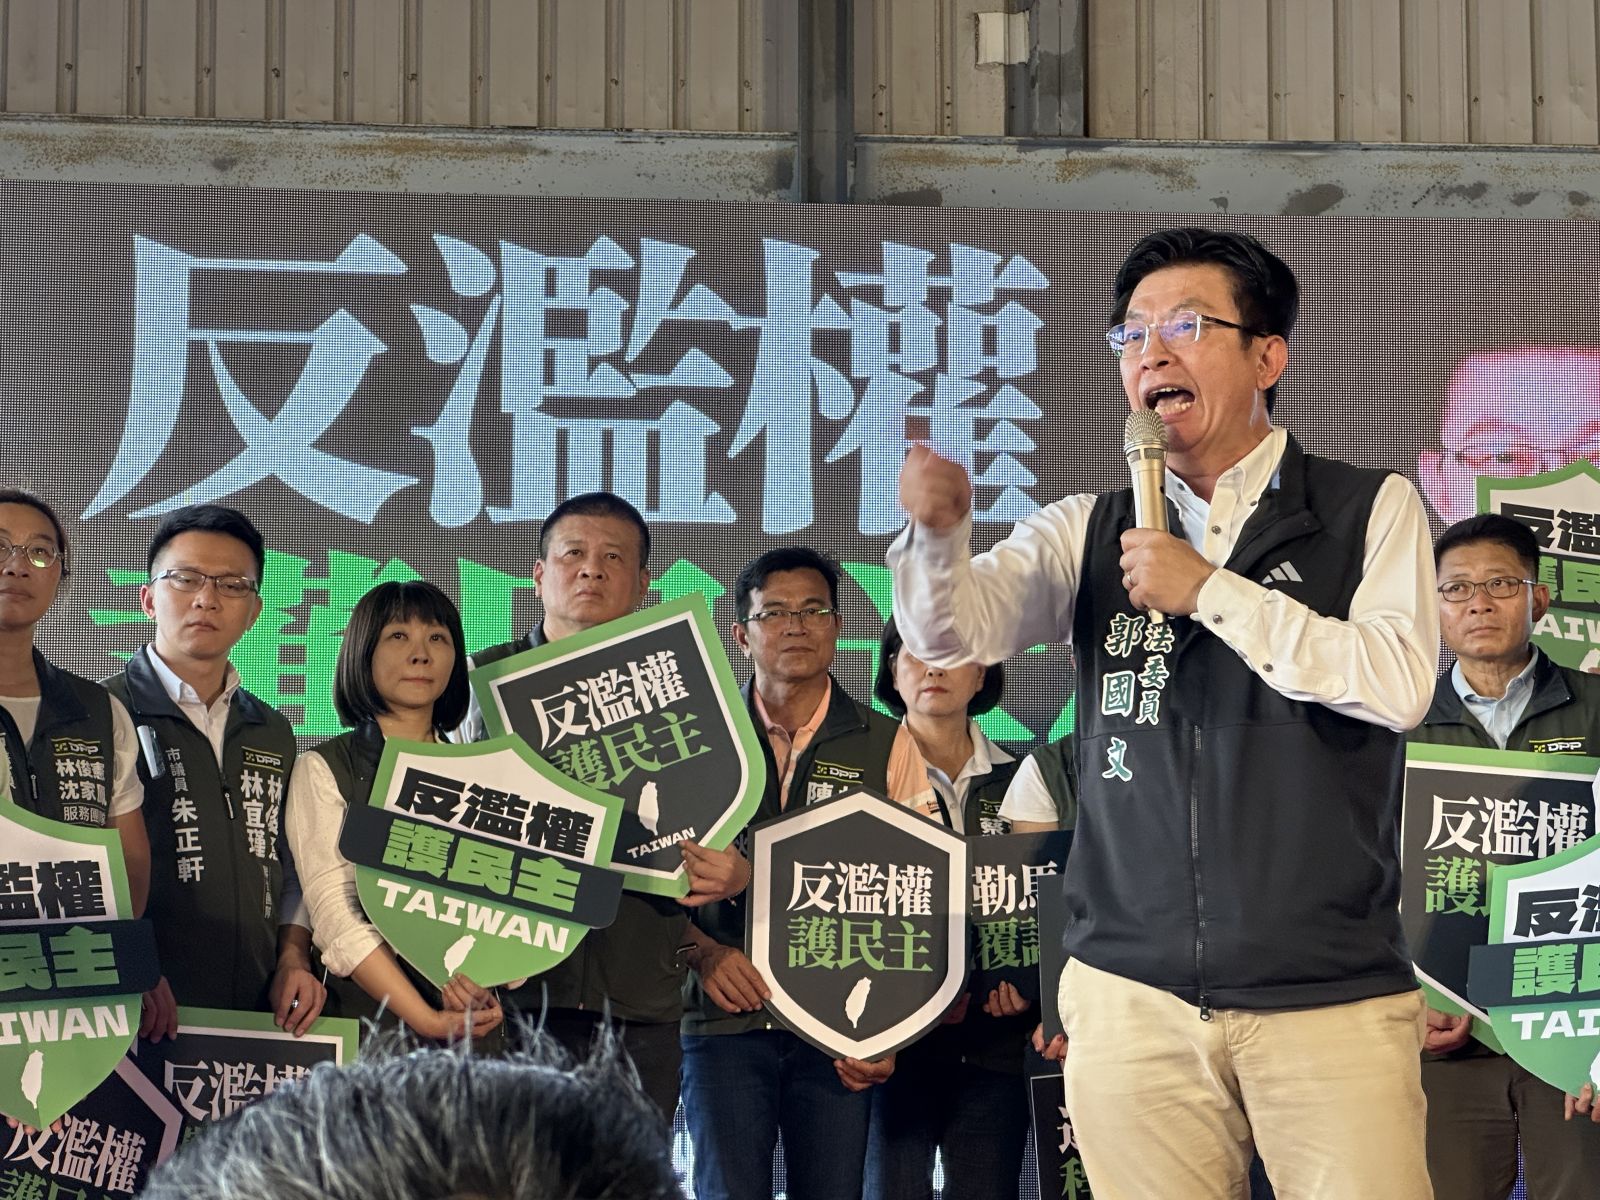 民進黨台南市黨部主委郭國文是街頭運動出身，論述慷慨激昂。辛啓松攝